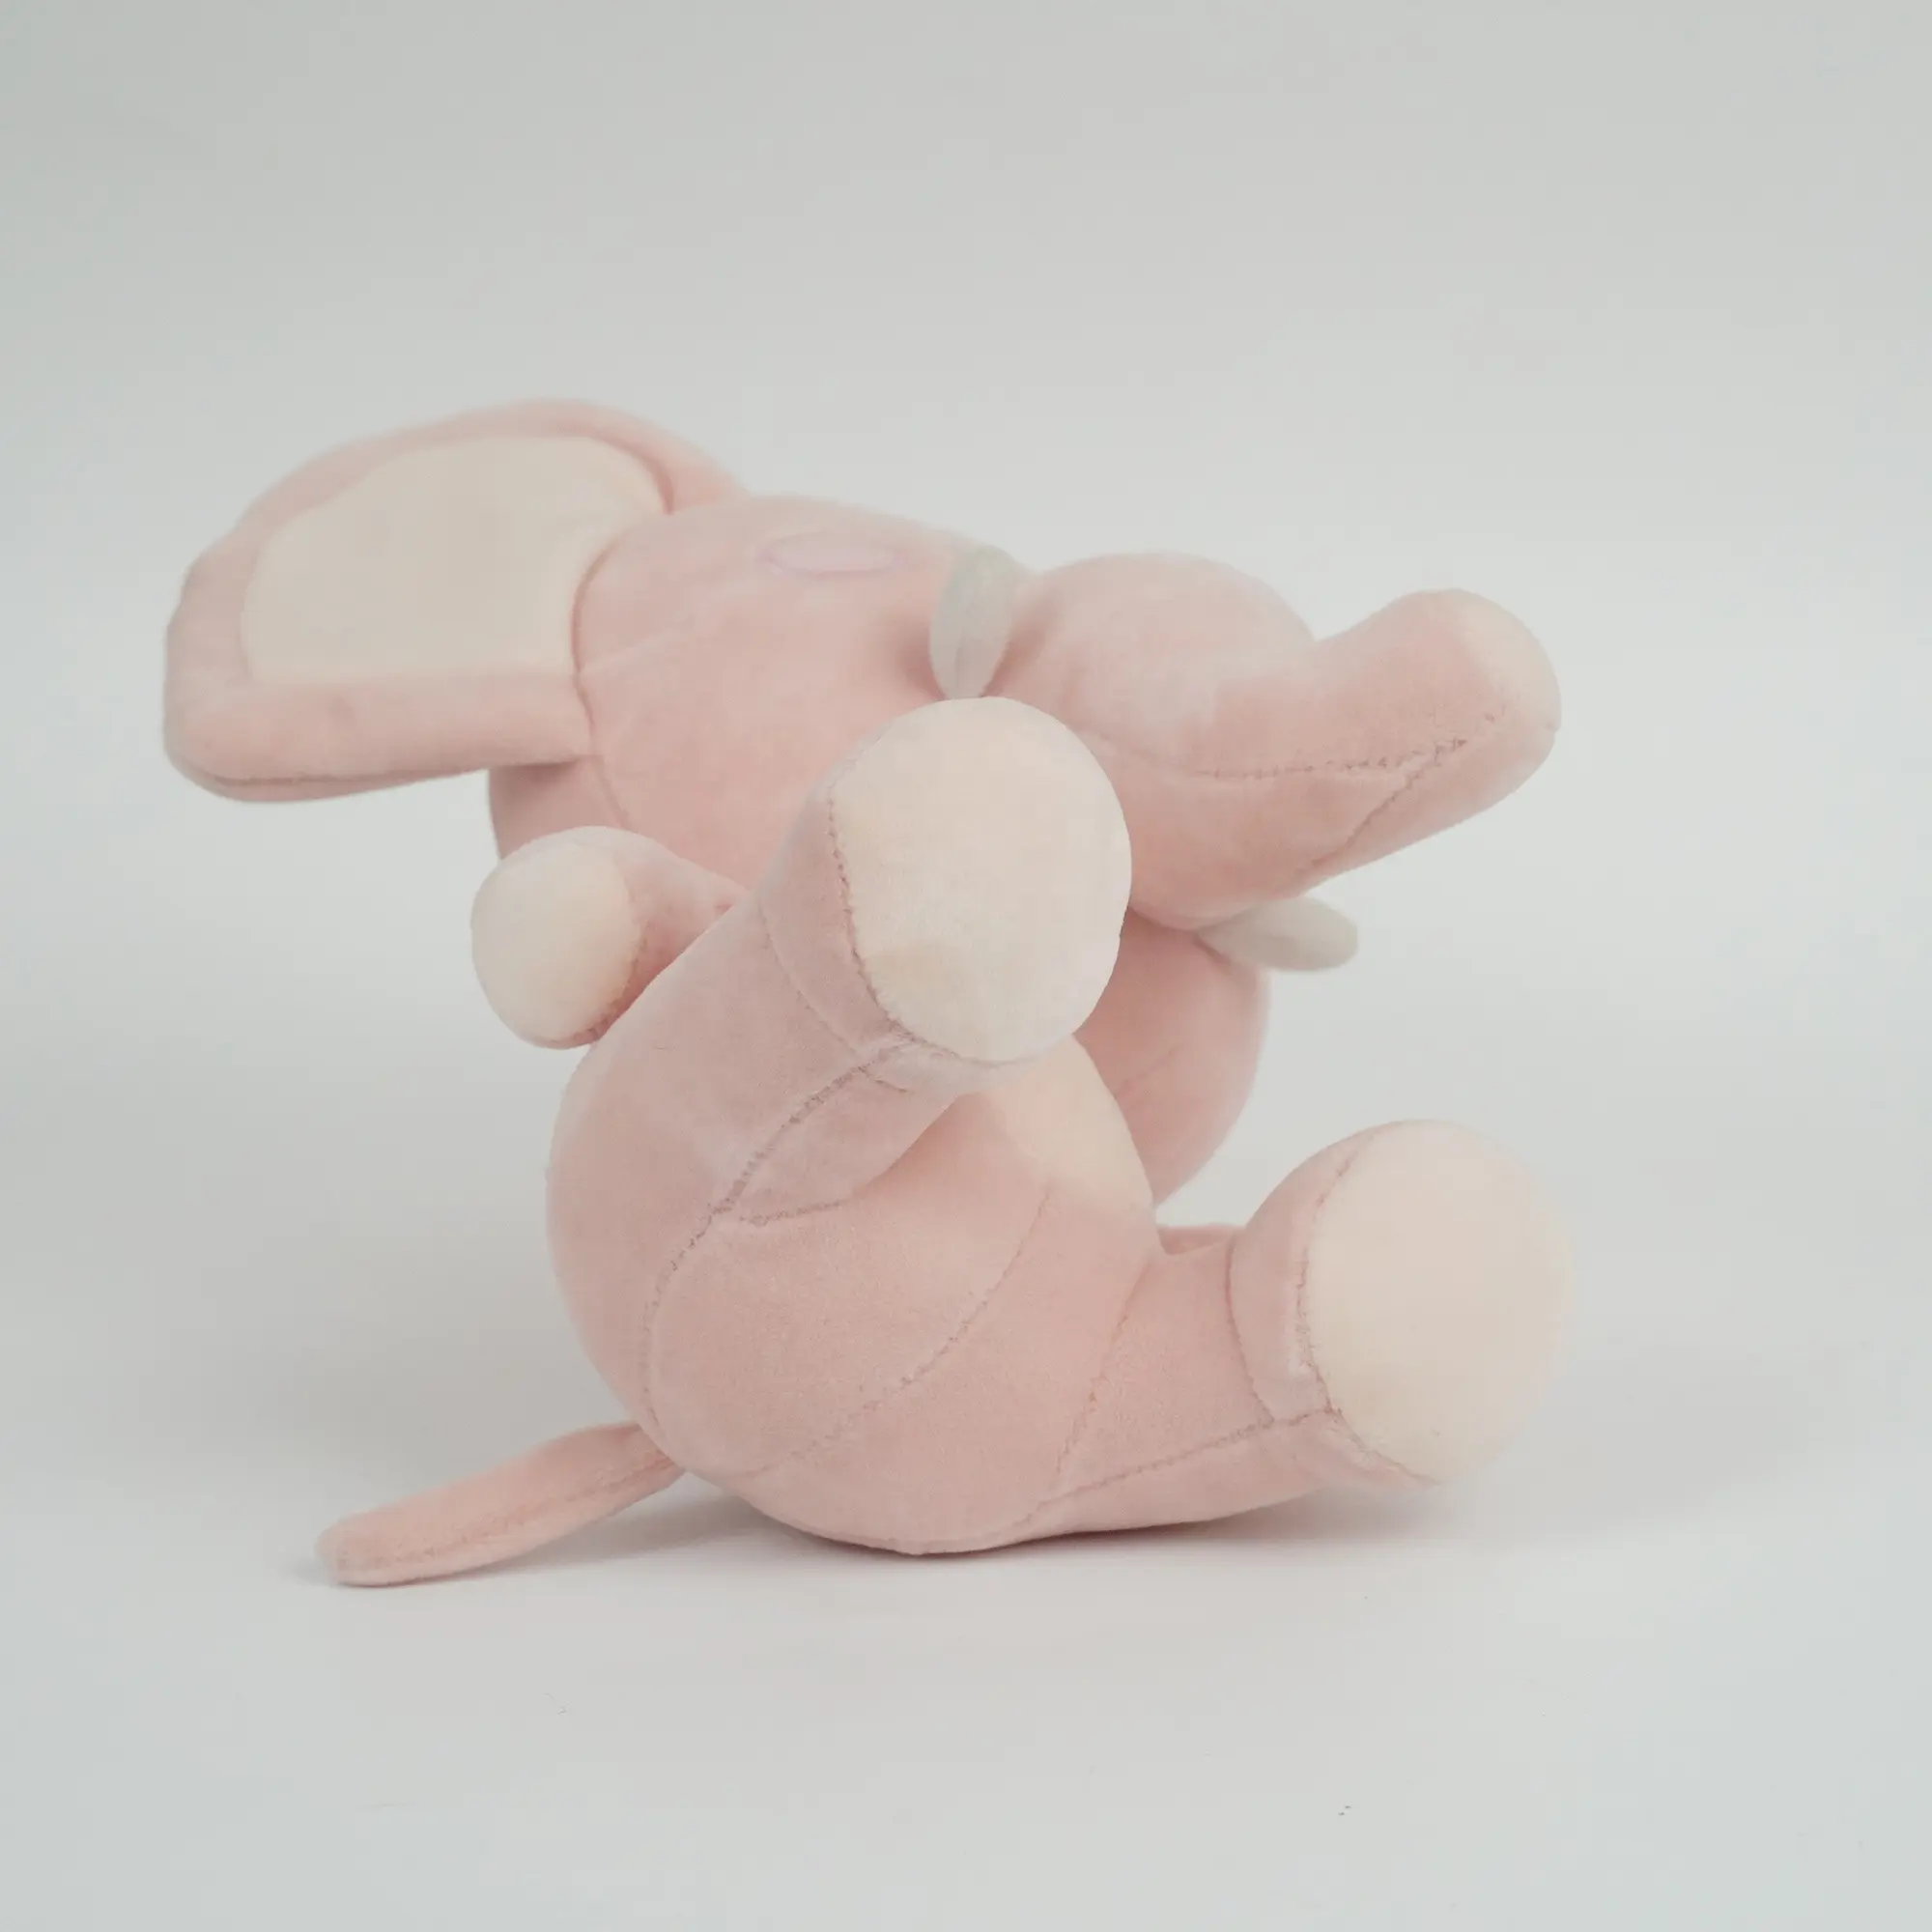 Penjualan Langsung dari Pabrik Mainan Binatang Gajah Besar Boneka Menggemaskan Lucu Velboa Lembut Supper Kristal untuk Bayi